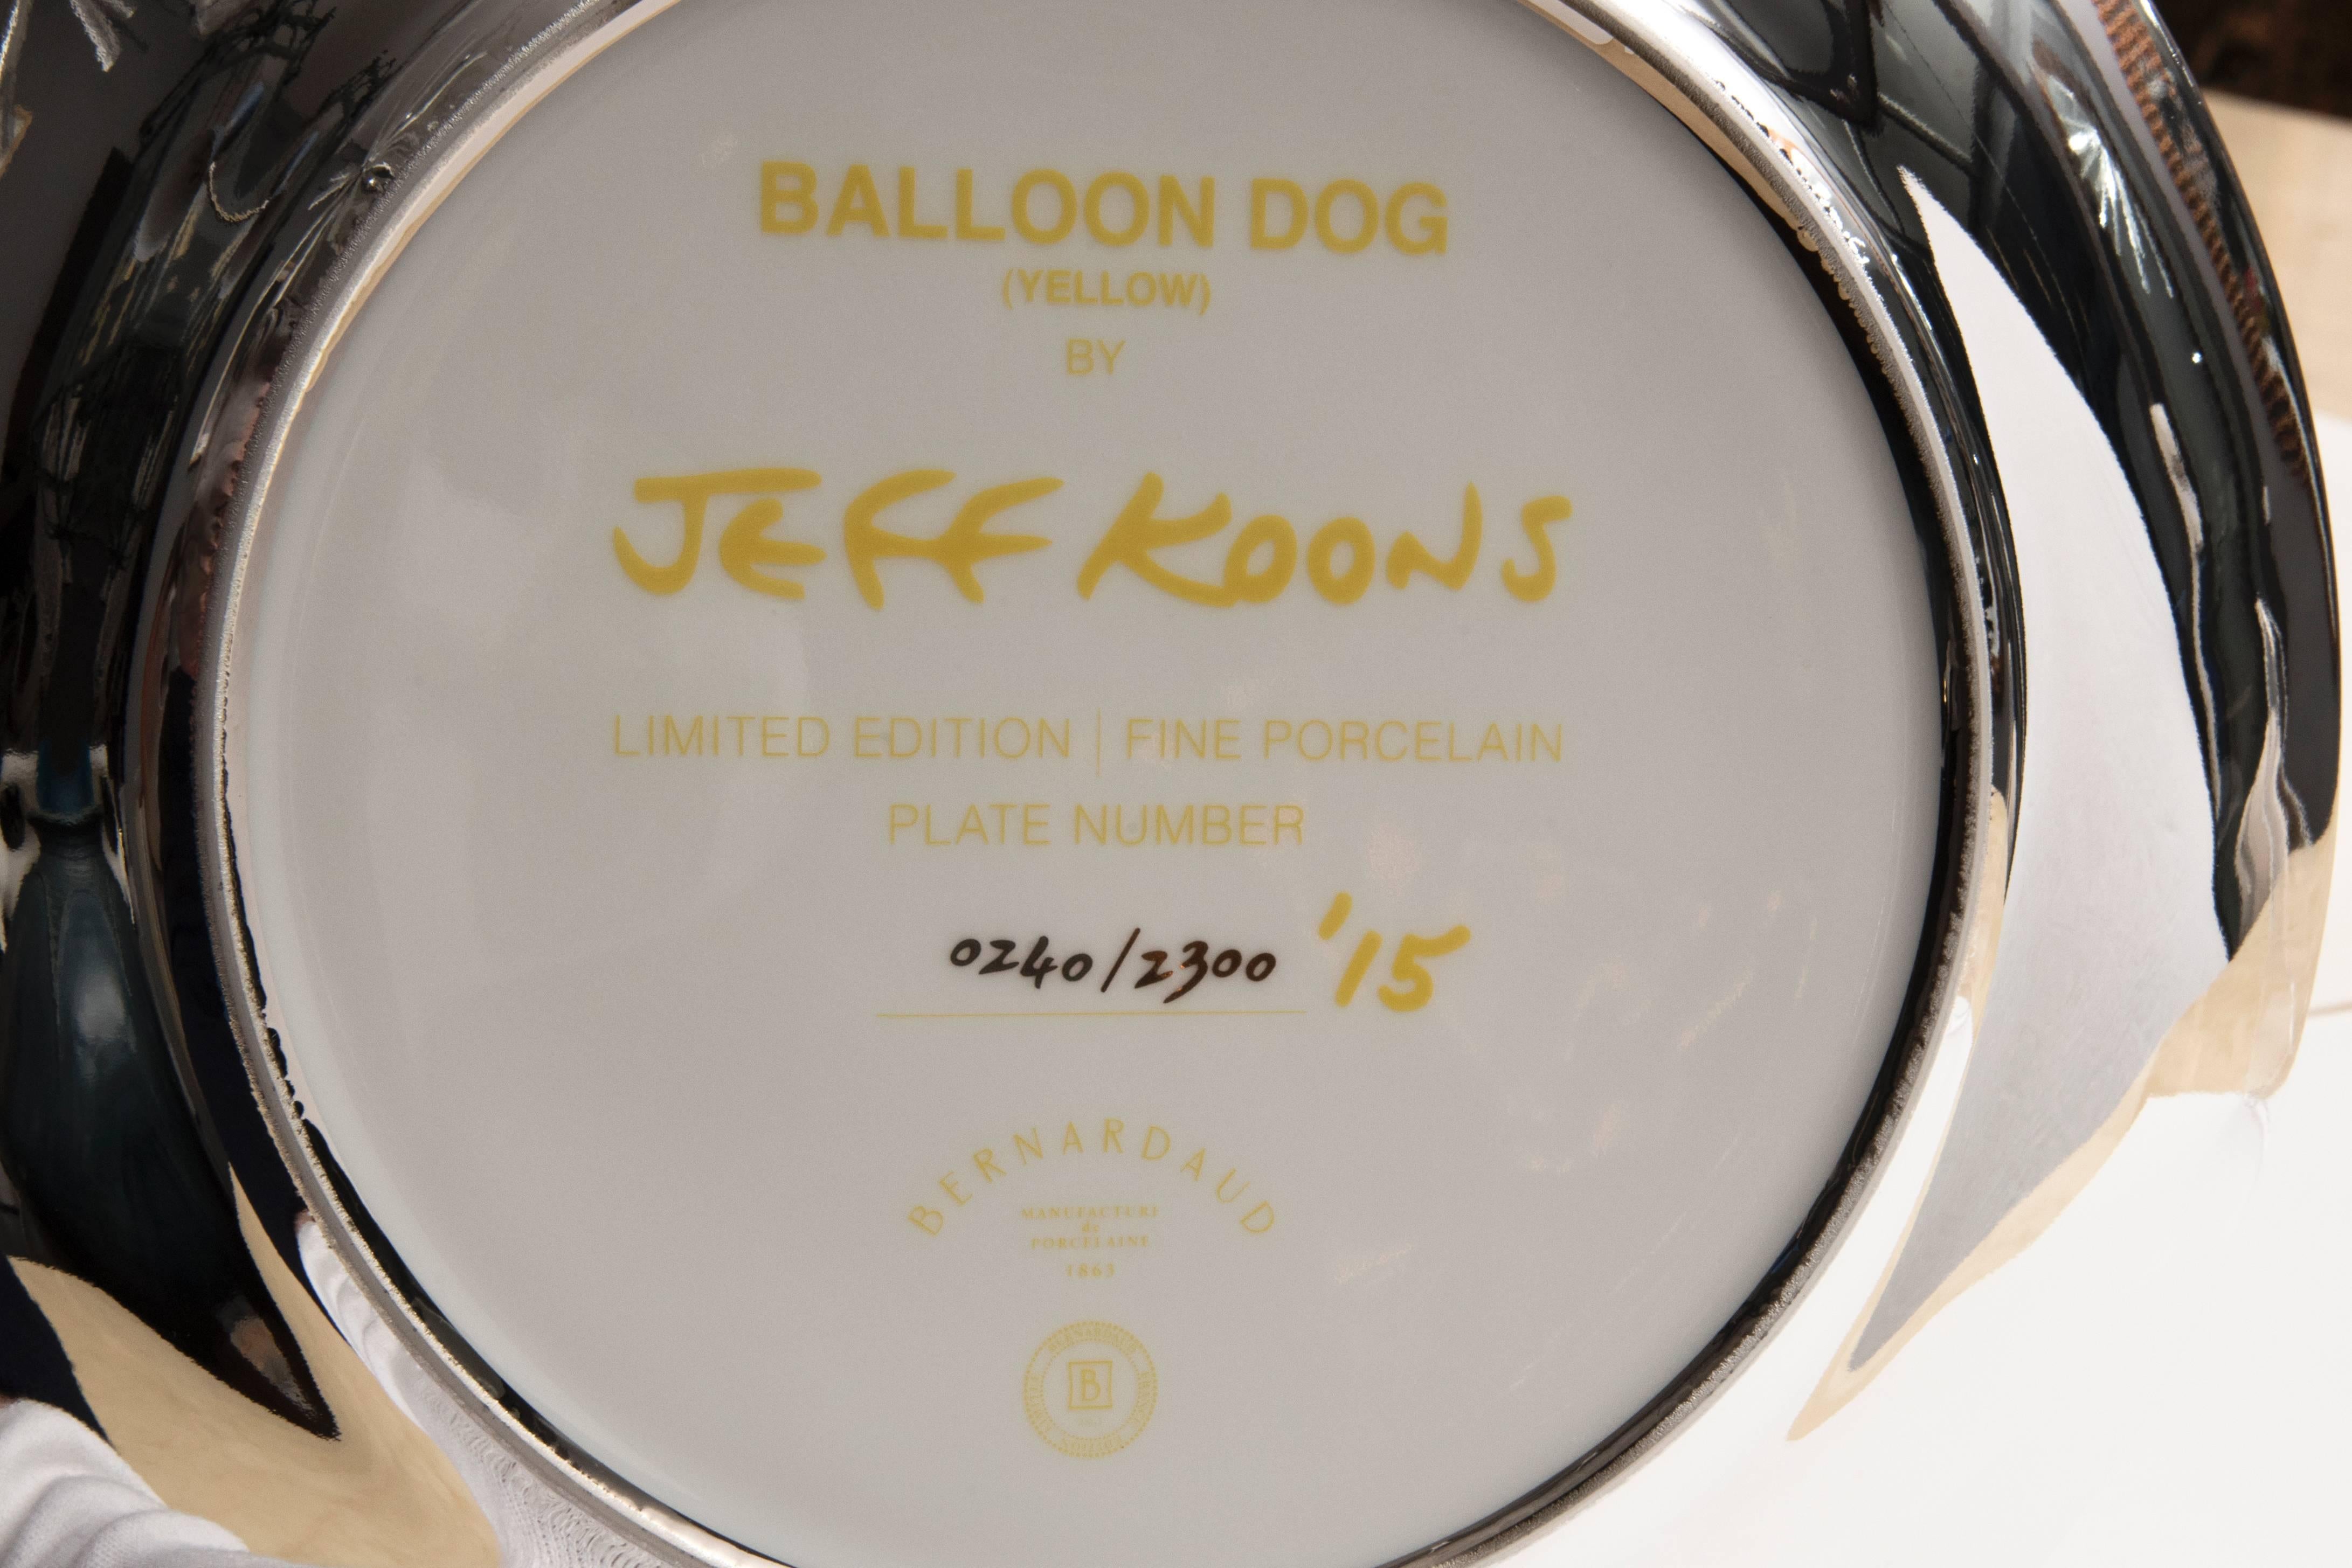 Jeff Koons balloon dog (Yellow), 2015, 
porcelaine,
signé et numéroté au dos : 240/2300,
Édition Bernardaud,
2015, ÉTATS-UNIS.
Mesures : Hauteur 27 cm, diamètre 27 cm.
Certificat d'authenticité, boîte d'origine.